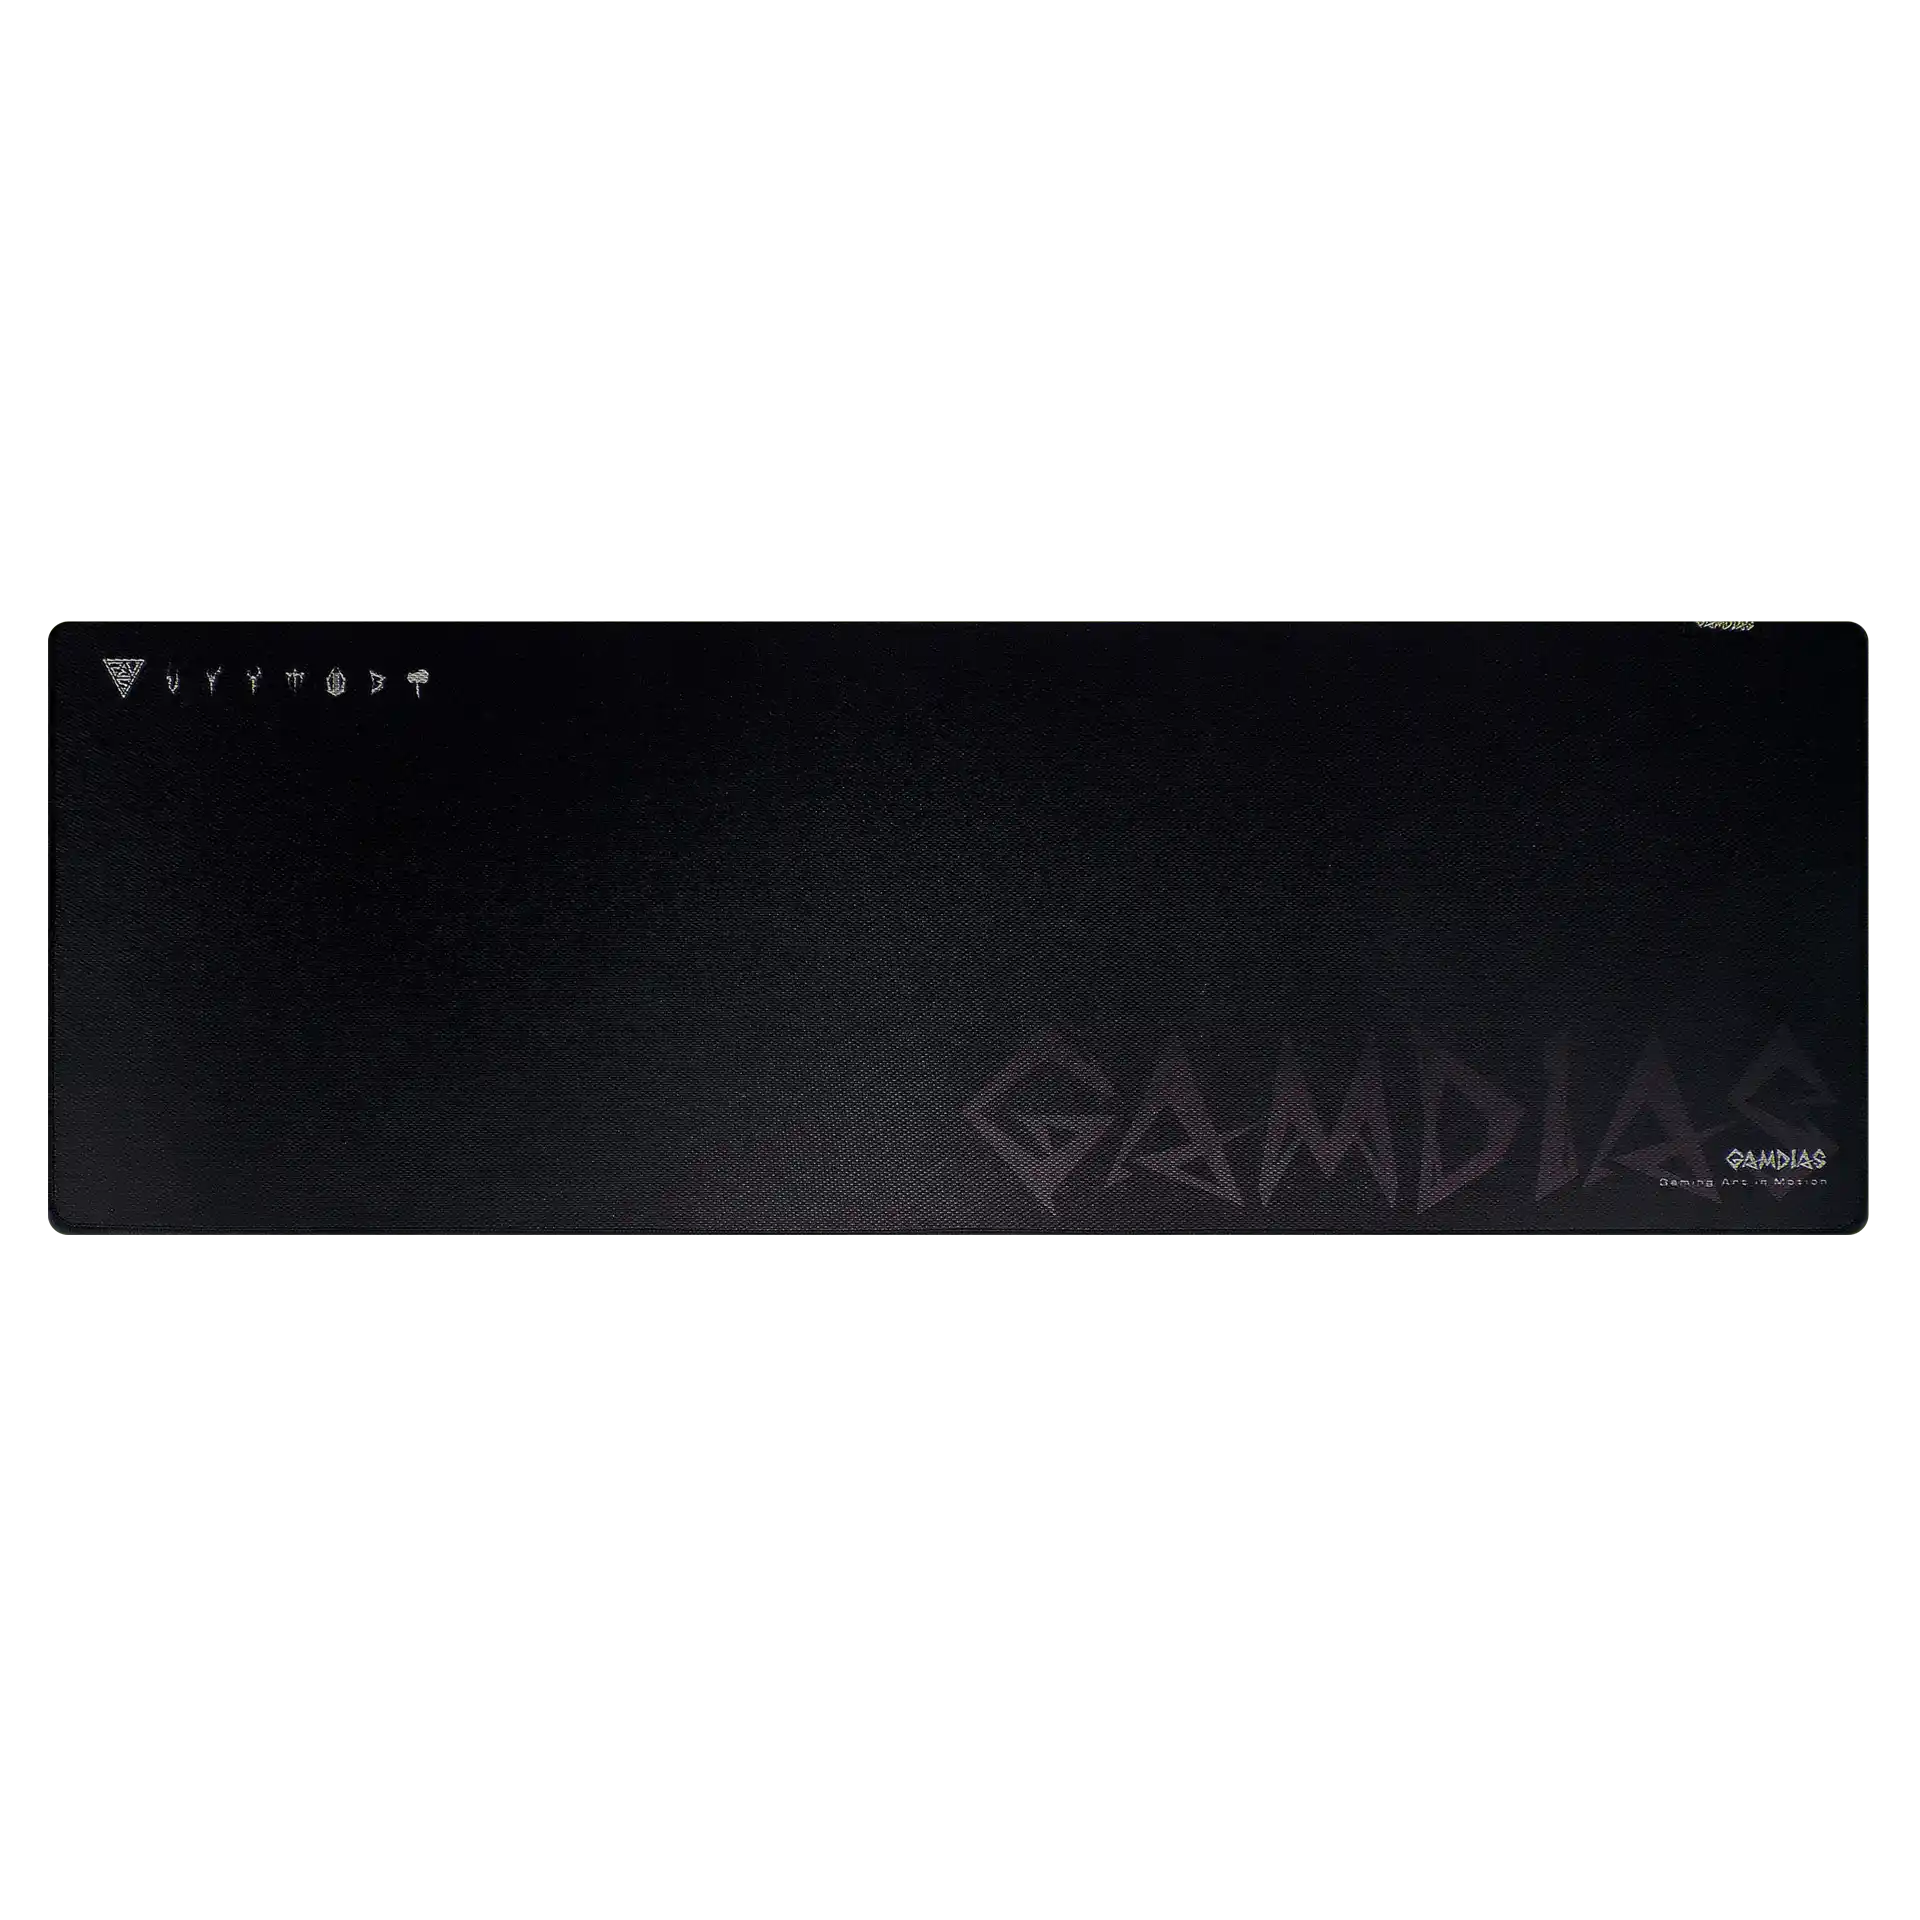 Gaming podloga Gamdias NYX P1 900x300x3mm